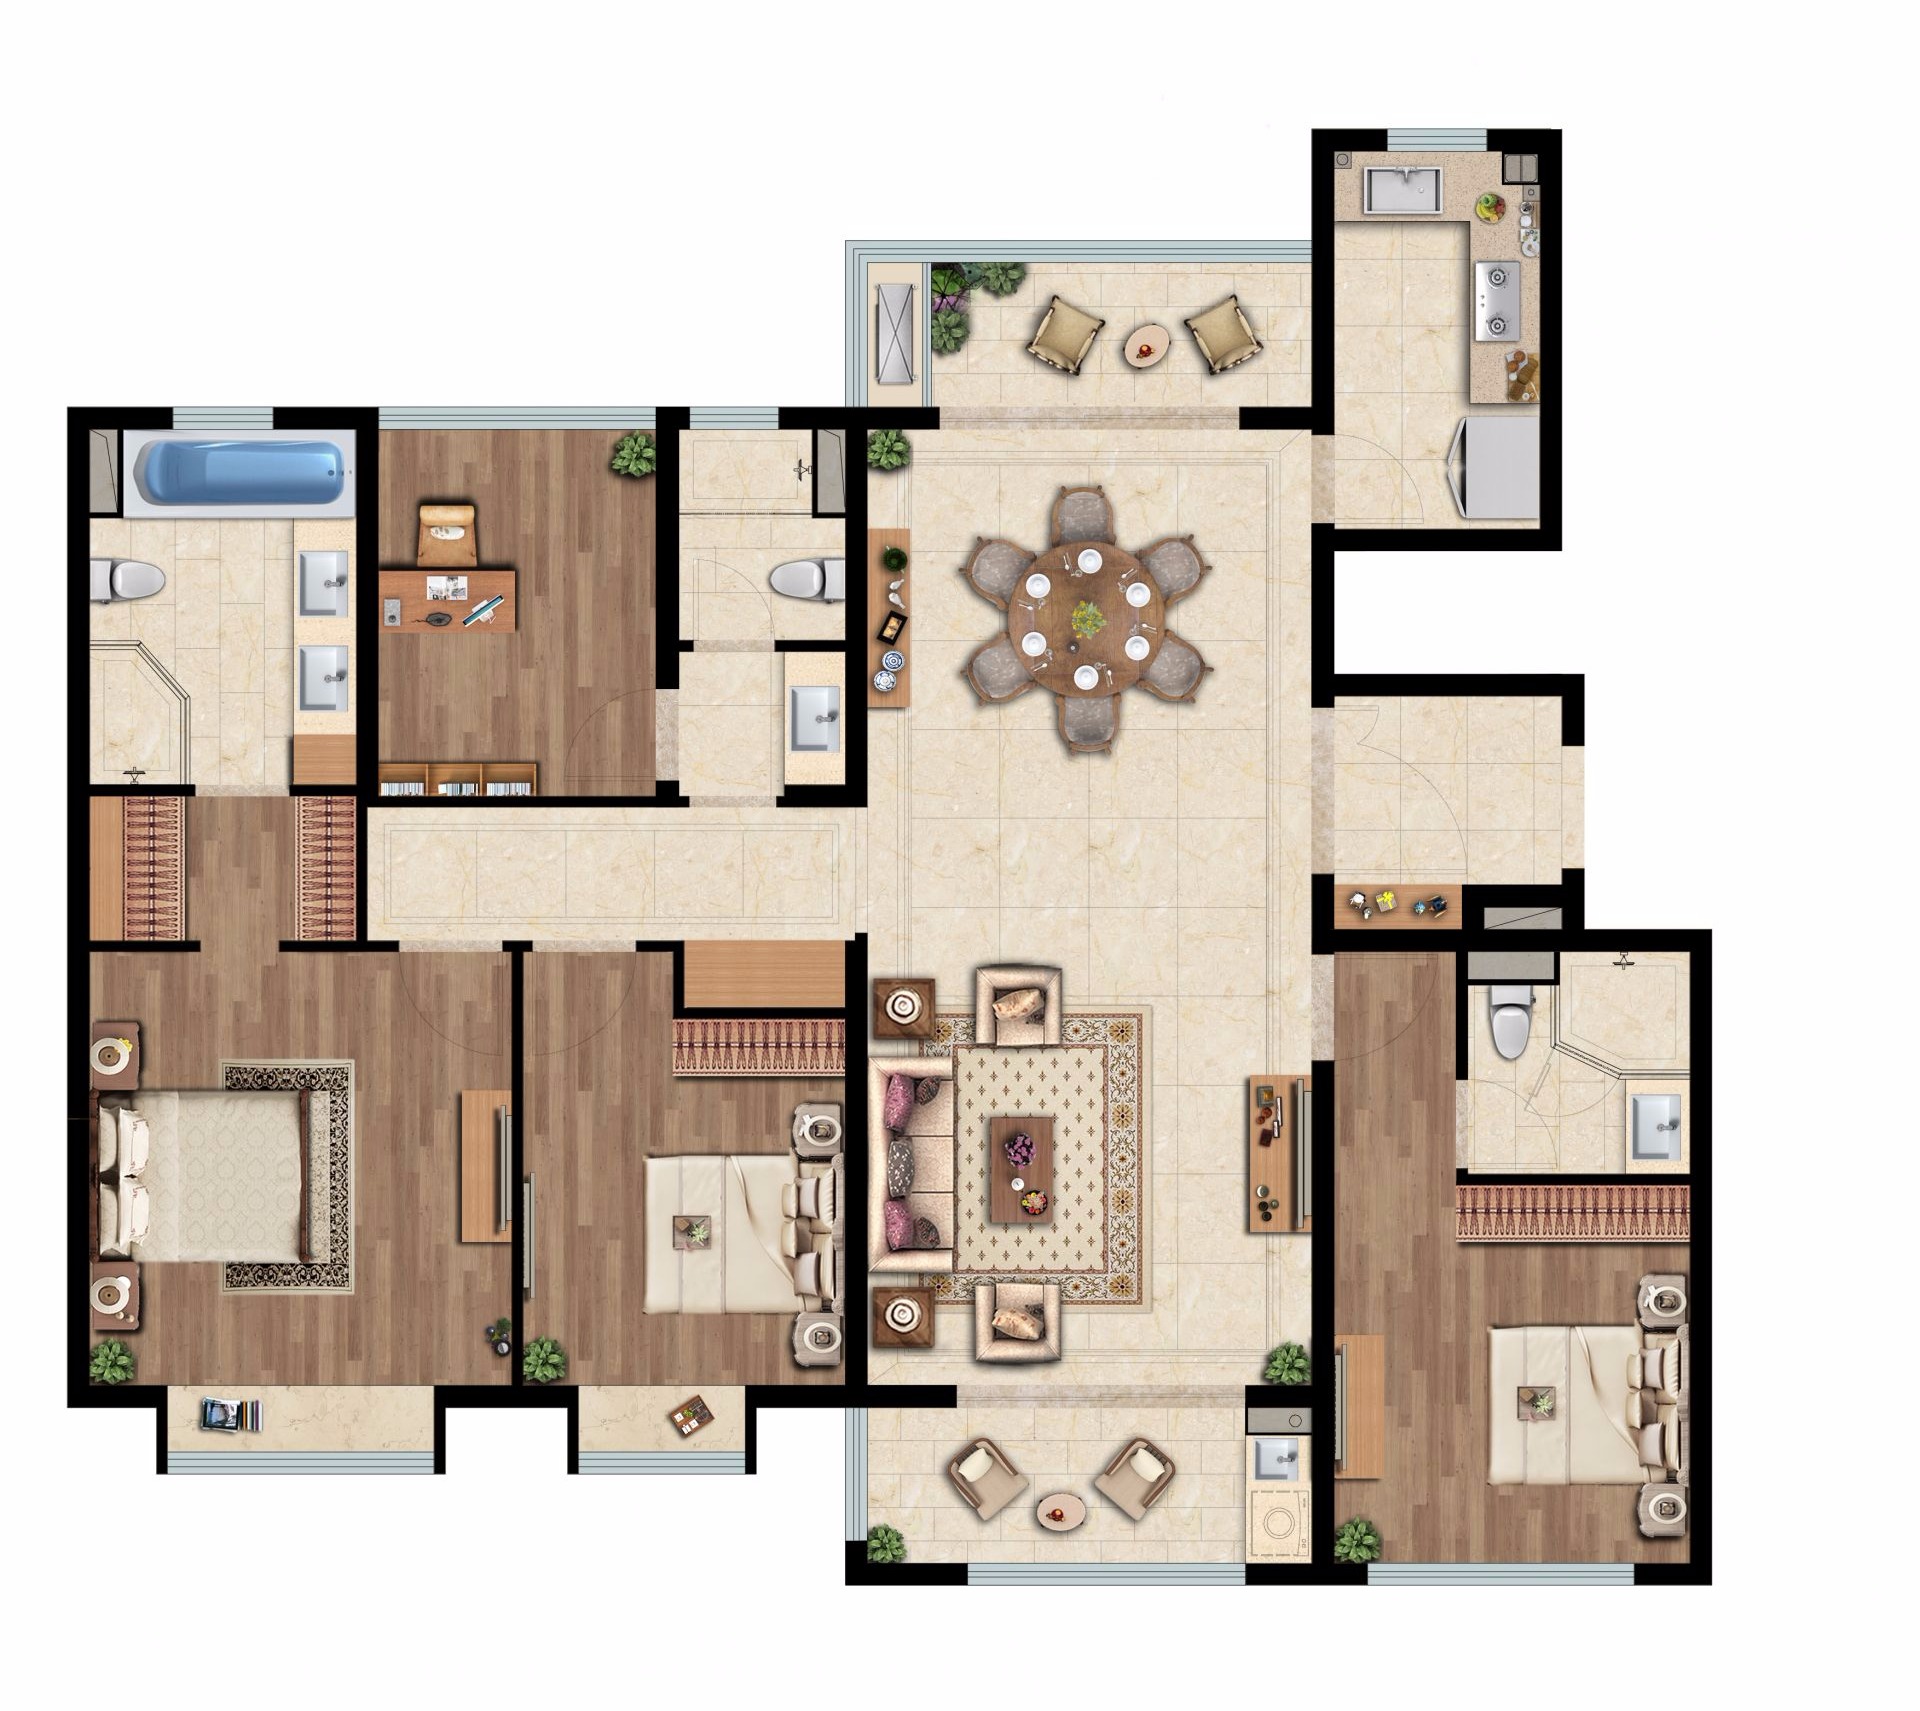 宏发嘉域 - 现代风格四室两厅装修效果图 - Leave设计效果图 - 每平每屋·设计家